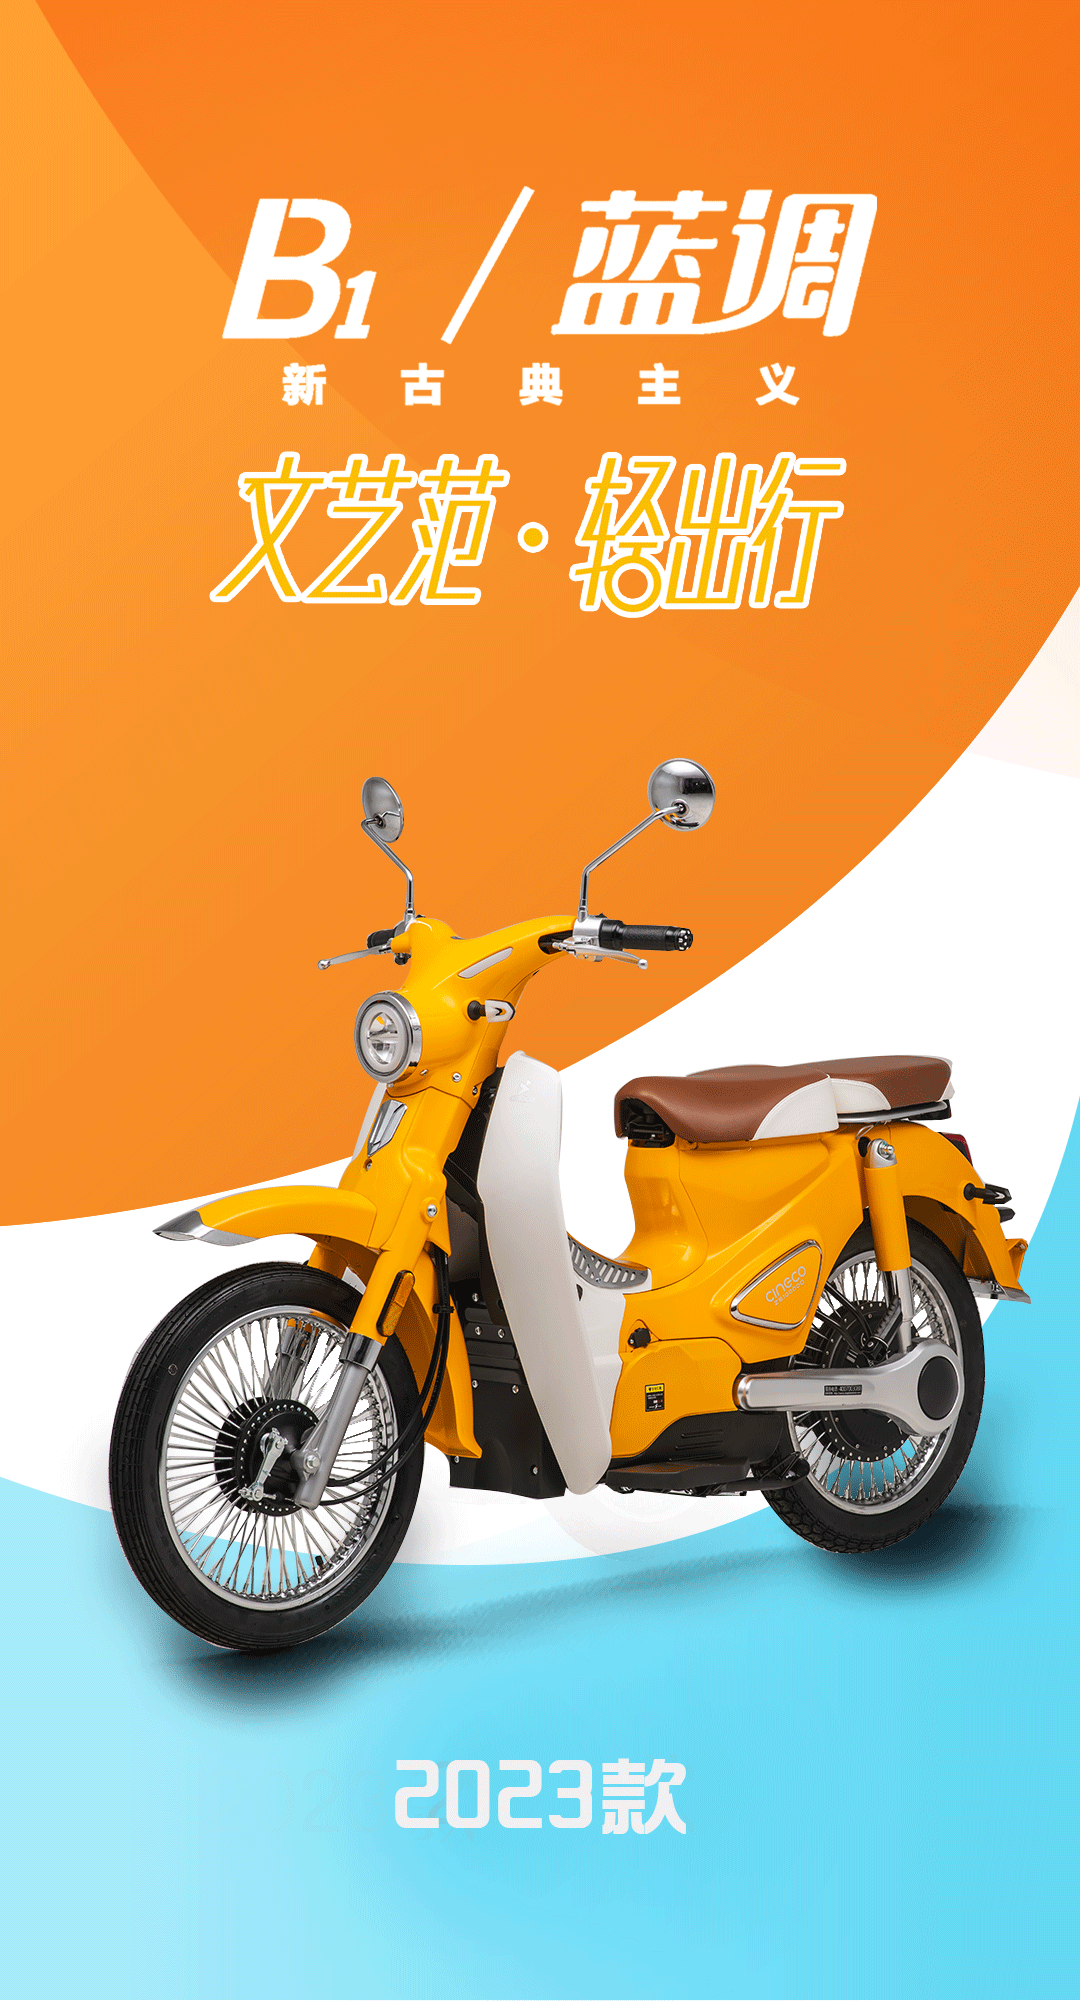 宗申B1/蓝调2023款电动摩托车发布 最低售价为5688元